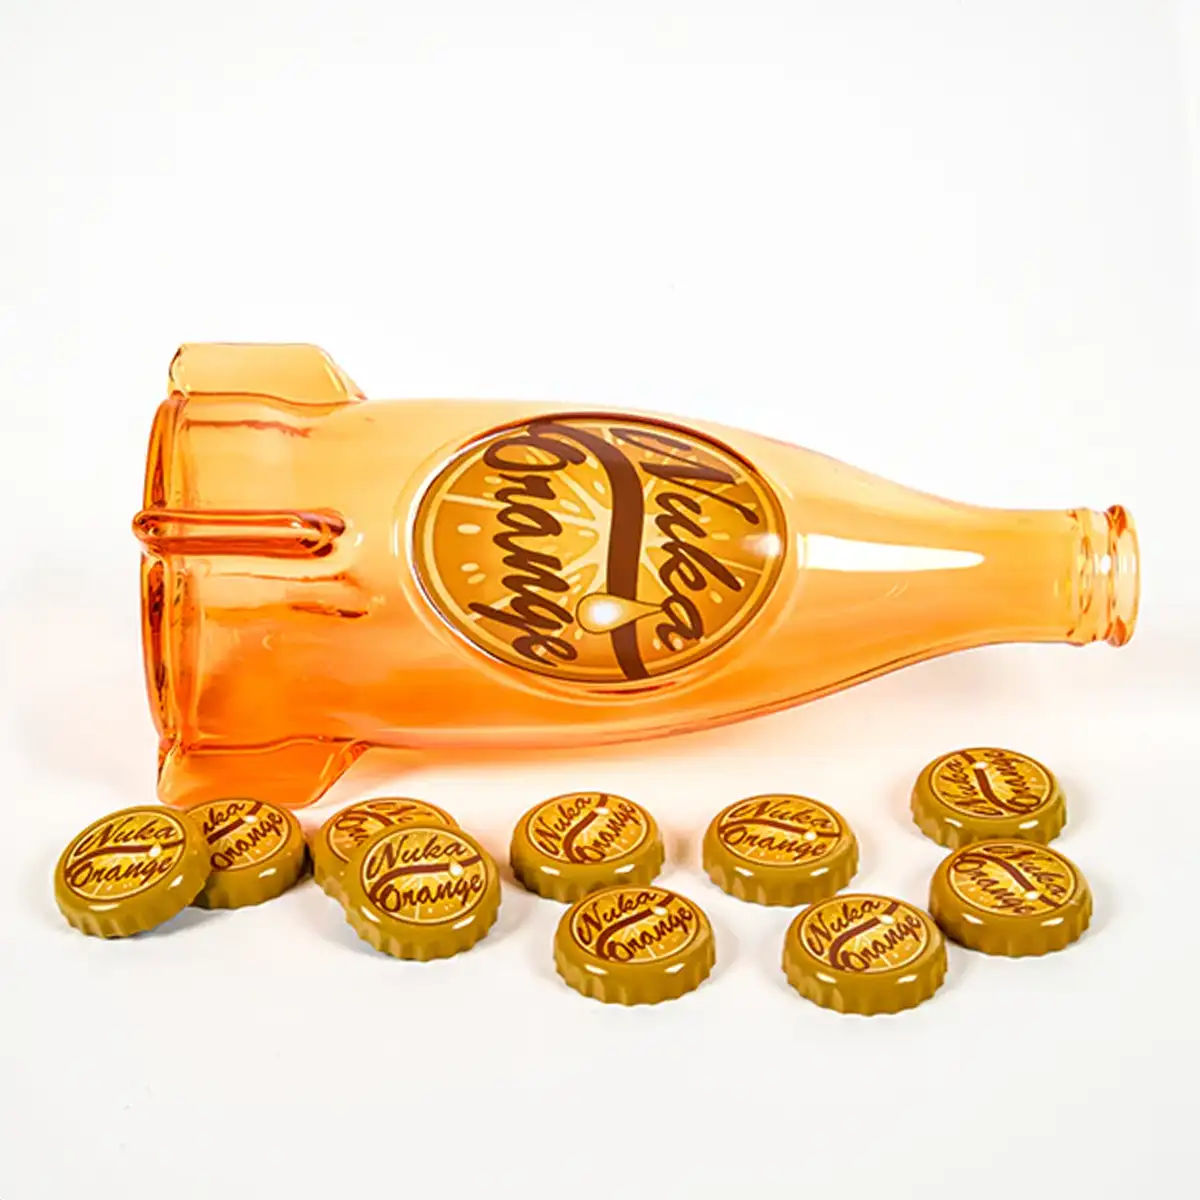 Fallout "Nuka Cola Orange" Glass Bottle and Caps Image 5